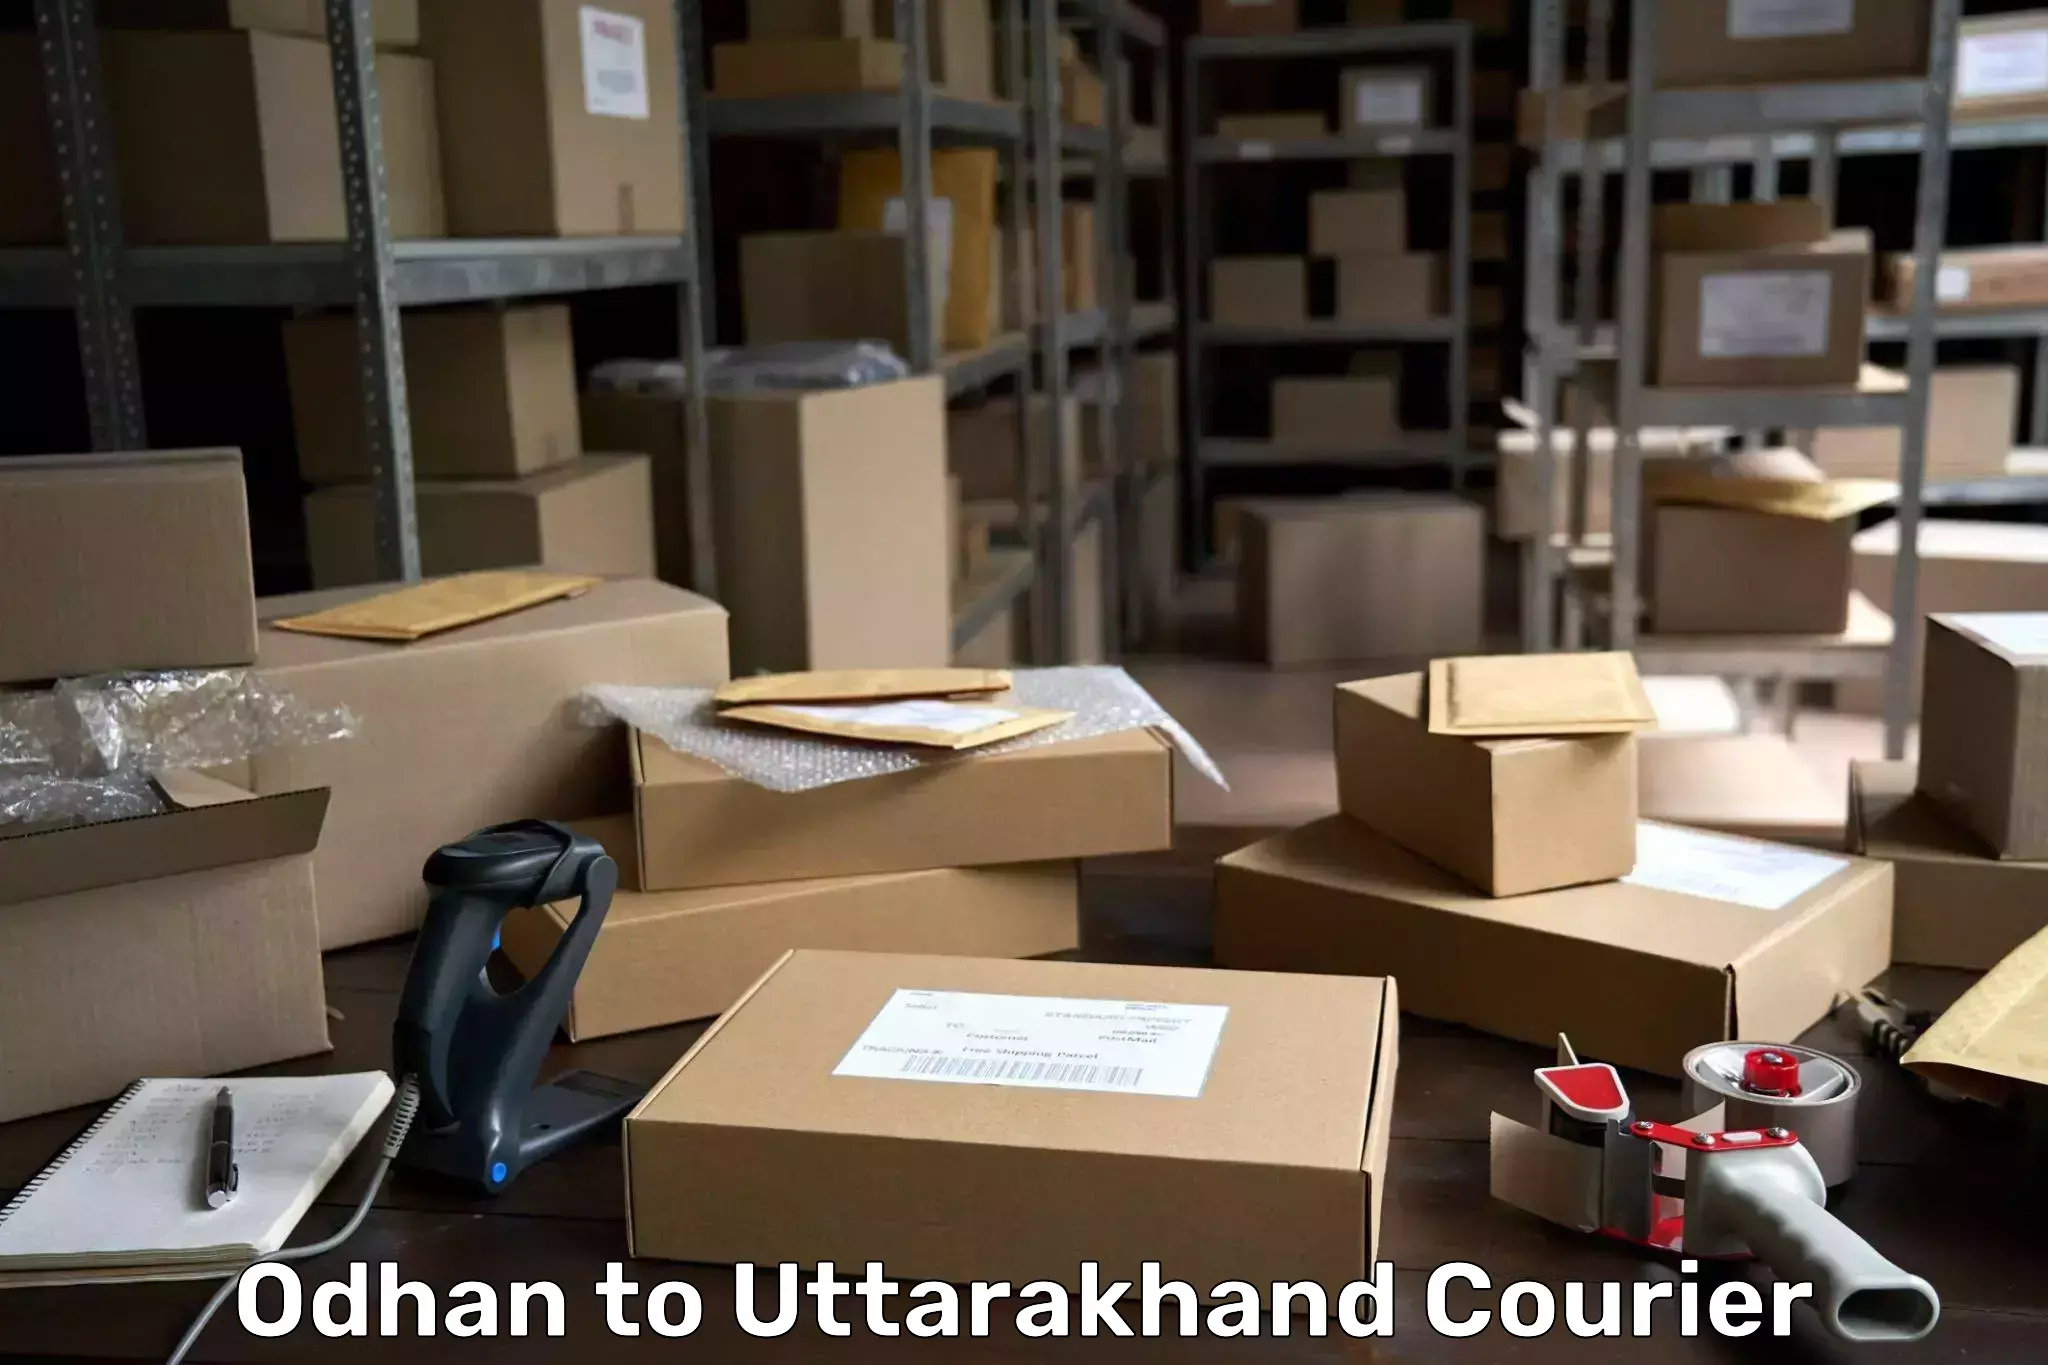 Door-to-door freight service Odhan to Uttarakhand